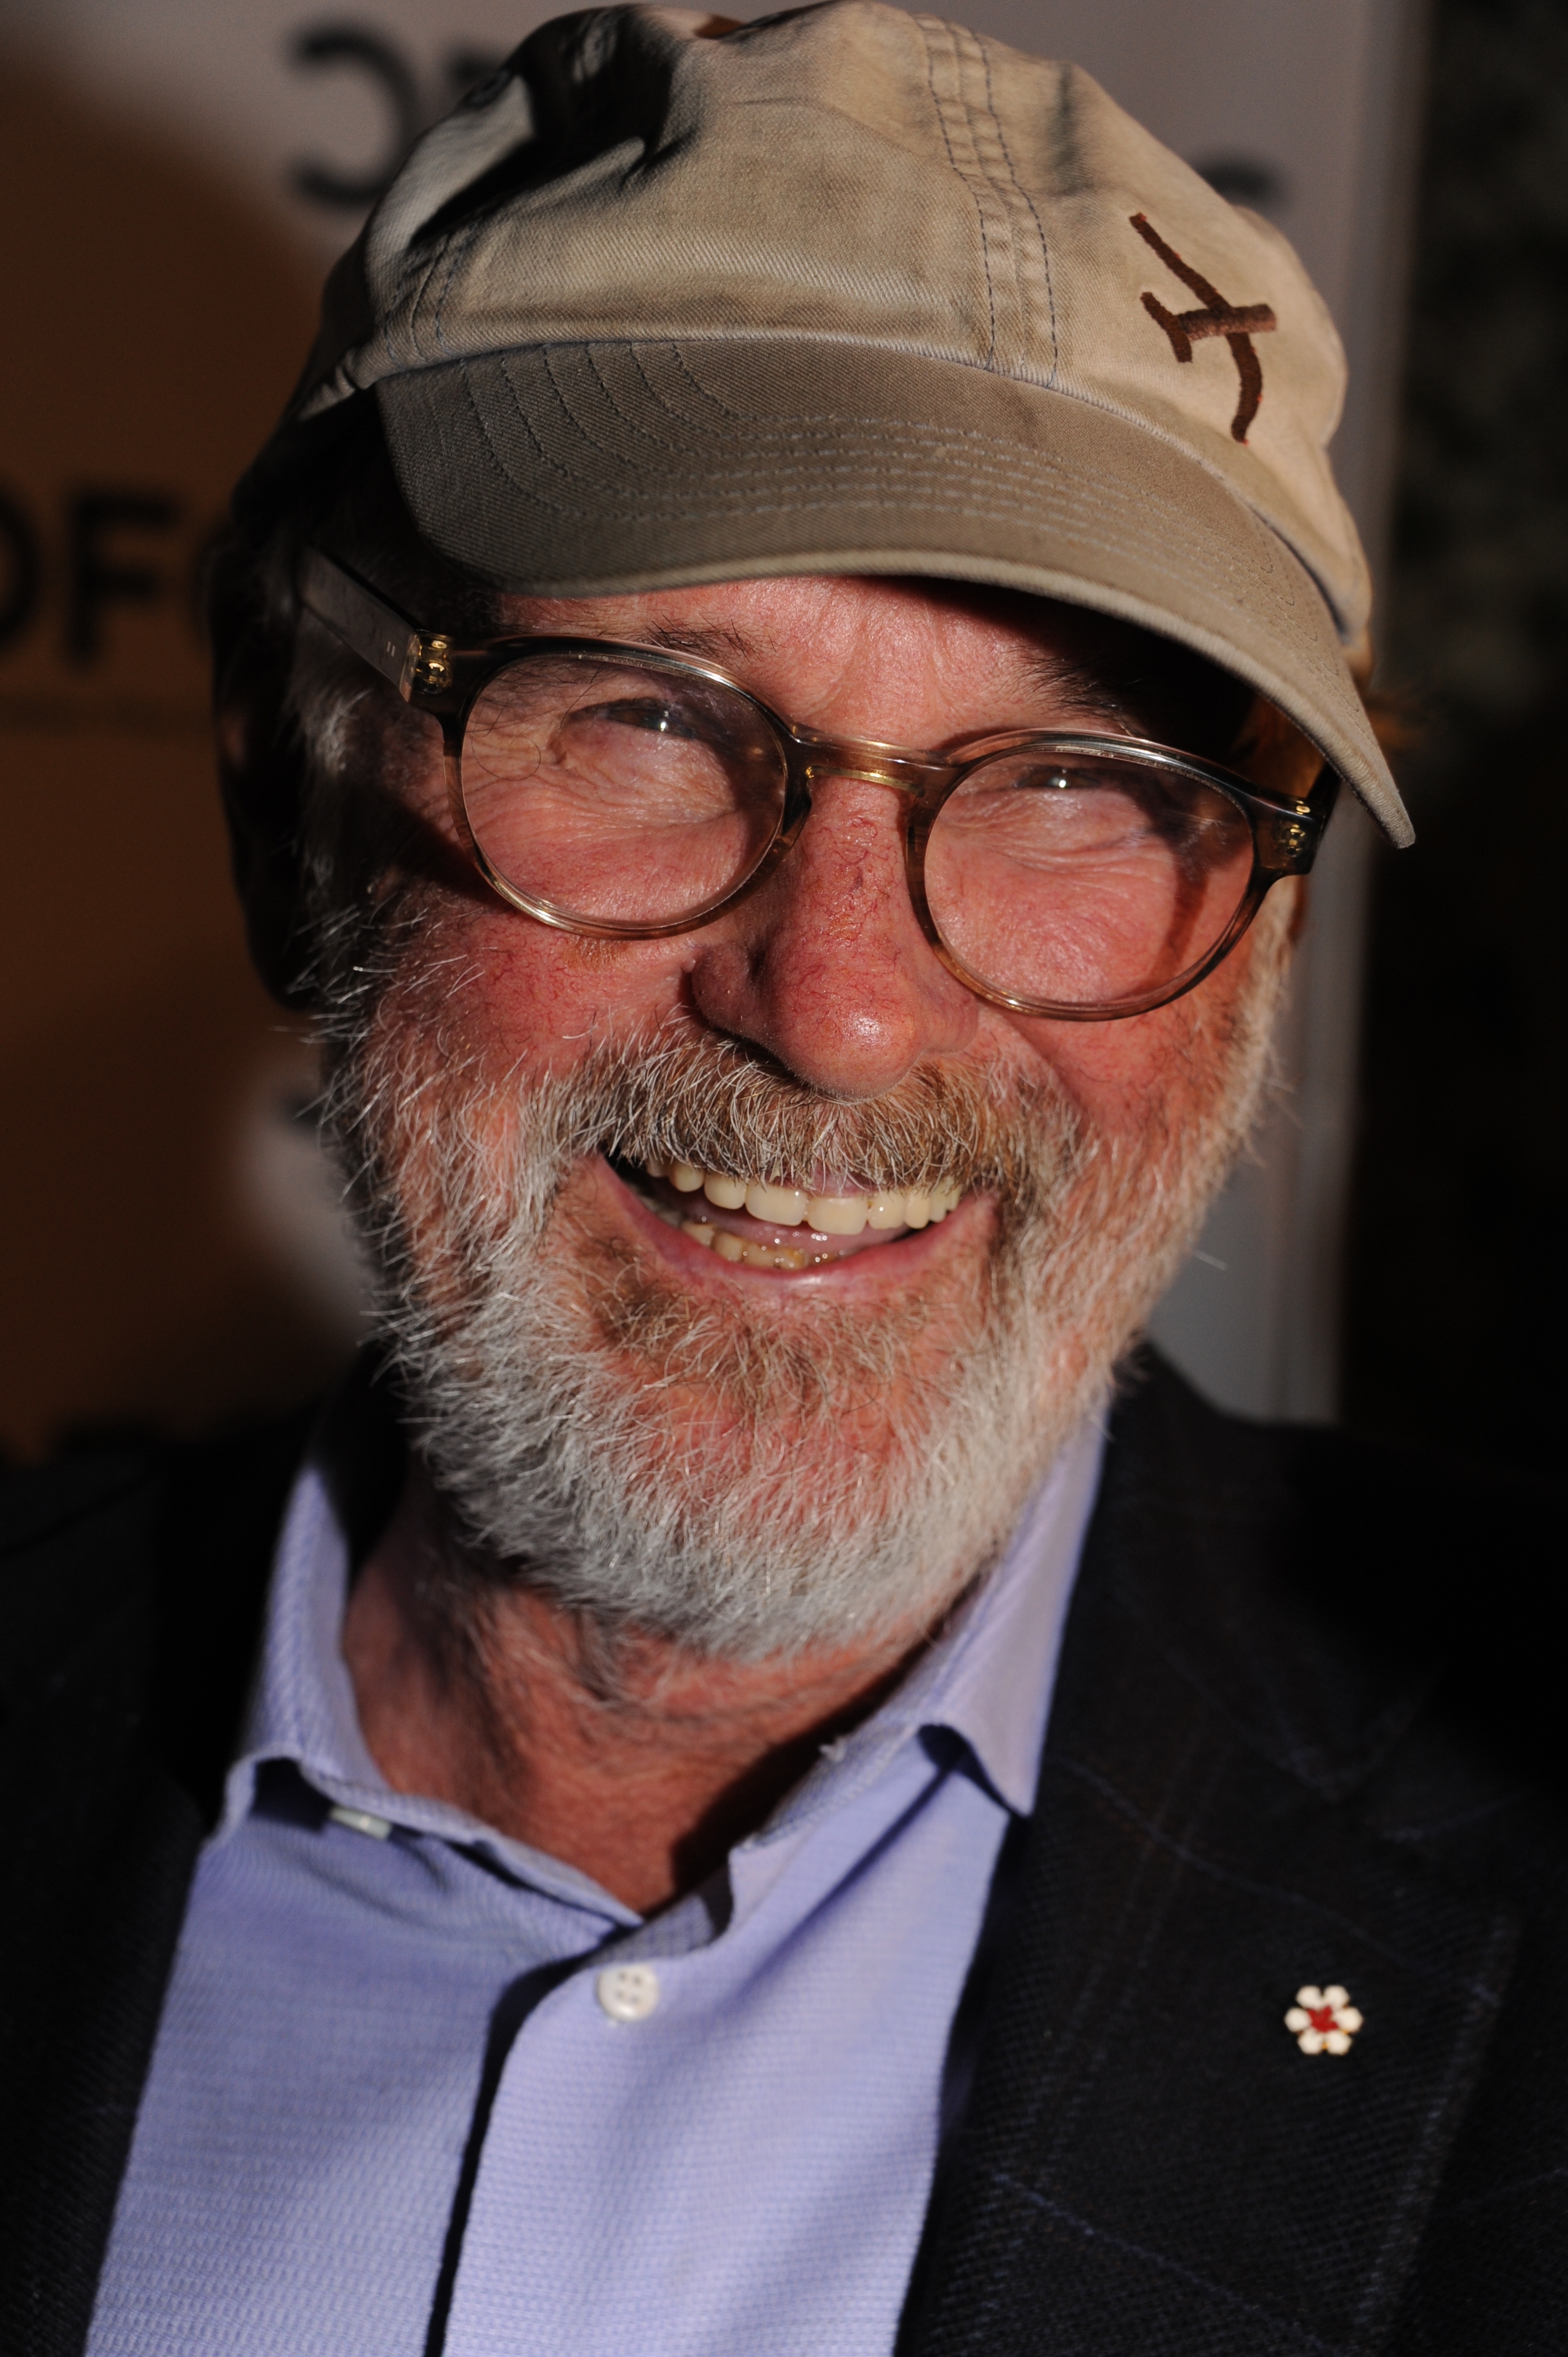 auteur Norman Jewison de la citation Eh bien, vous savez que l'ancienne ligne - à nominer est ce dont il s'agit. Je pense que j'ai plutôt bien réussi - j'ai eu environ 46, soit 47 nominations de mes films, et mes films ont remporté environ 12 prix au total, donc je n'ai pas vraiment de plaintes.